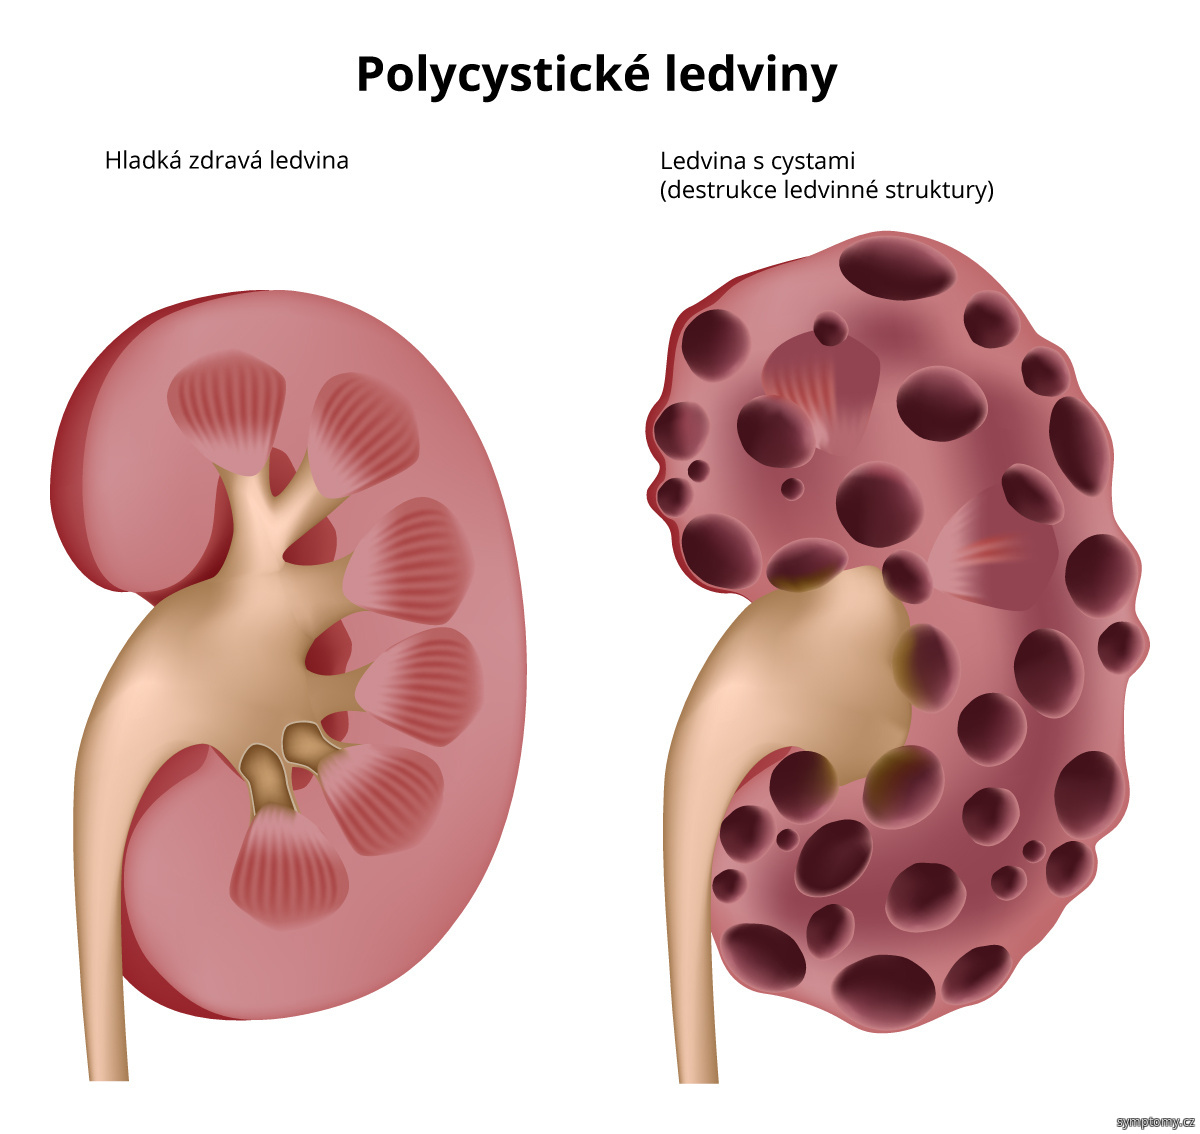 Polycystické ledviny